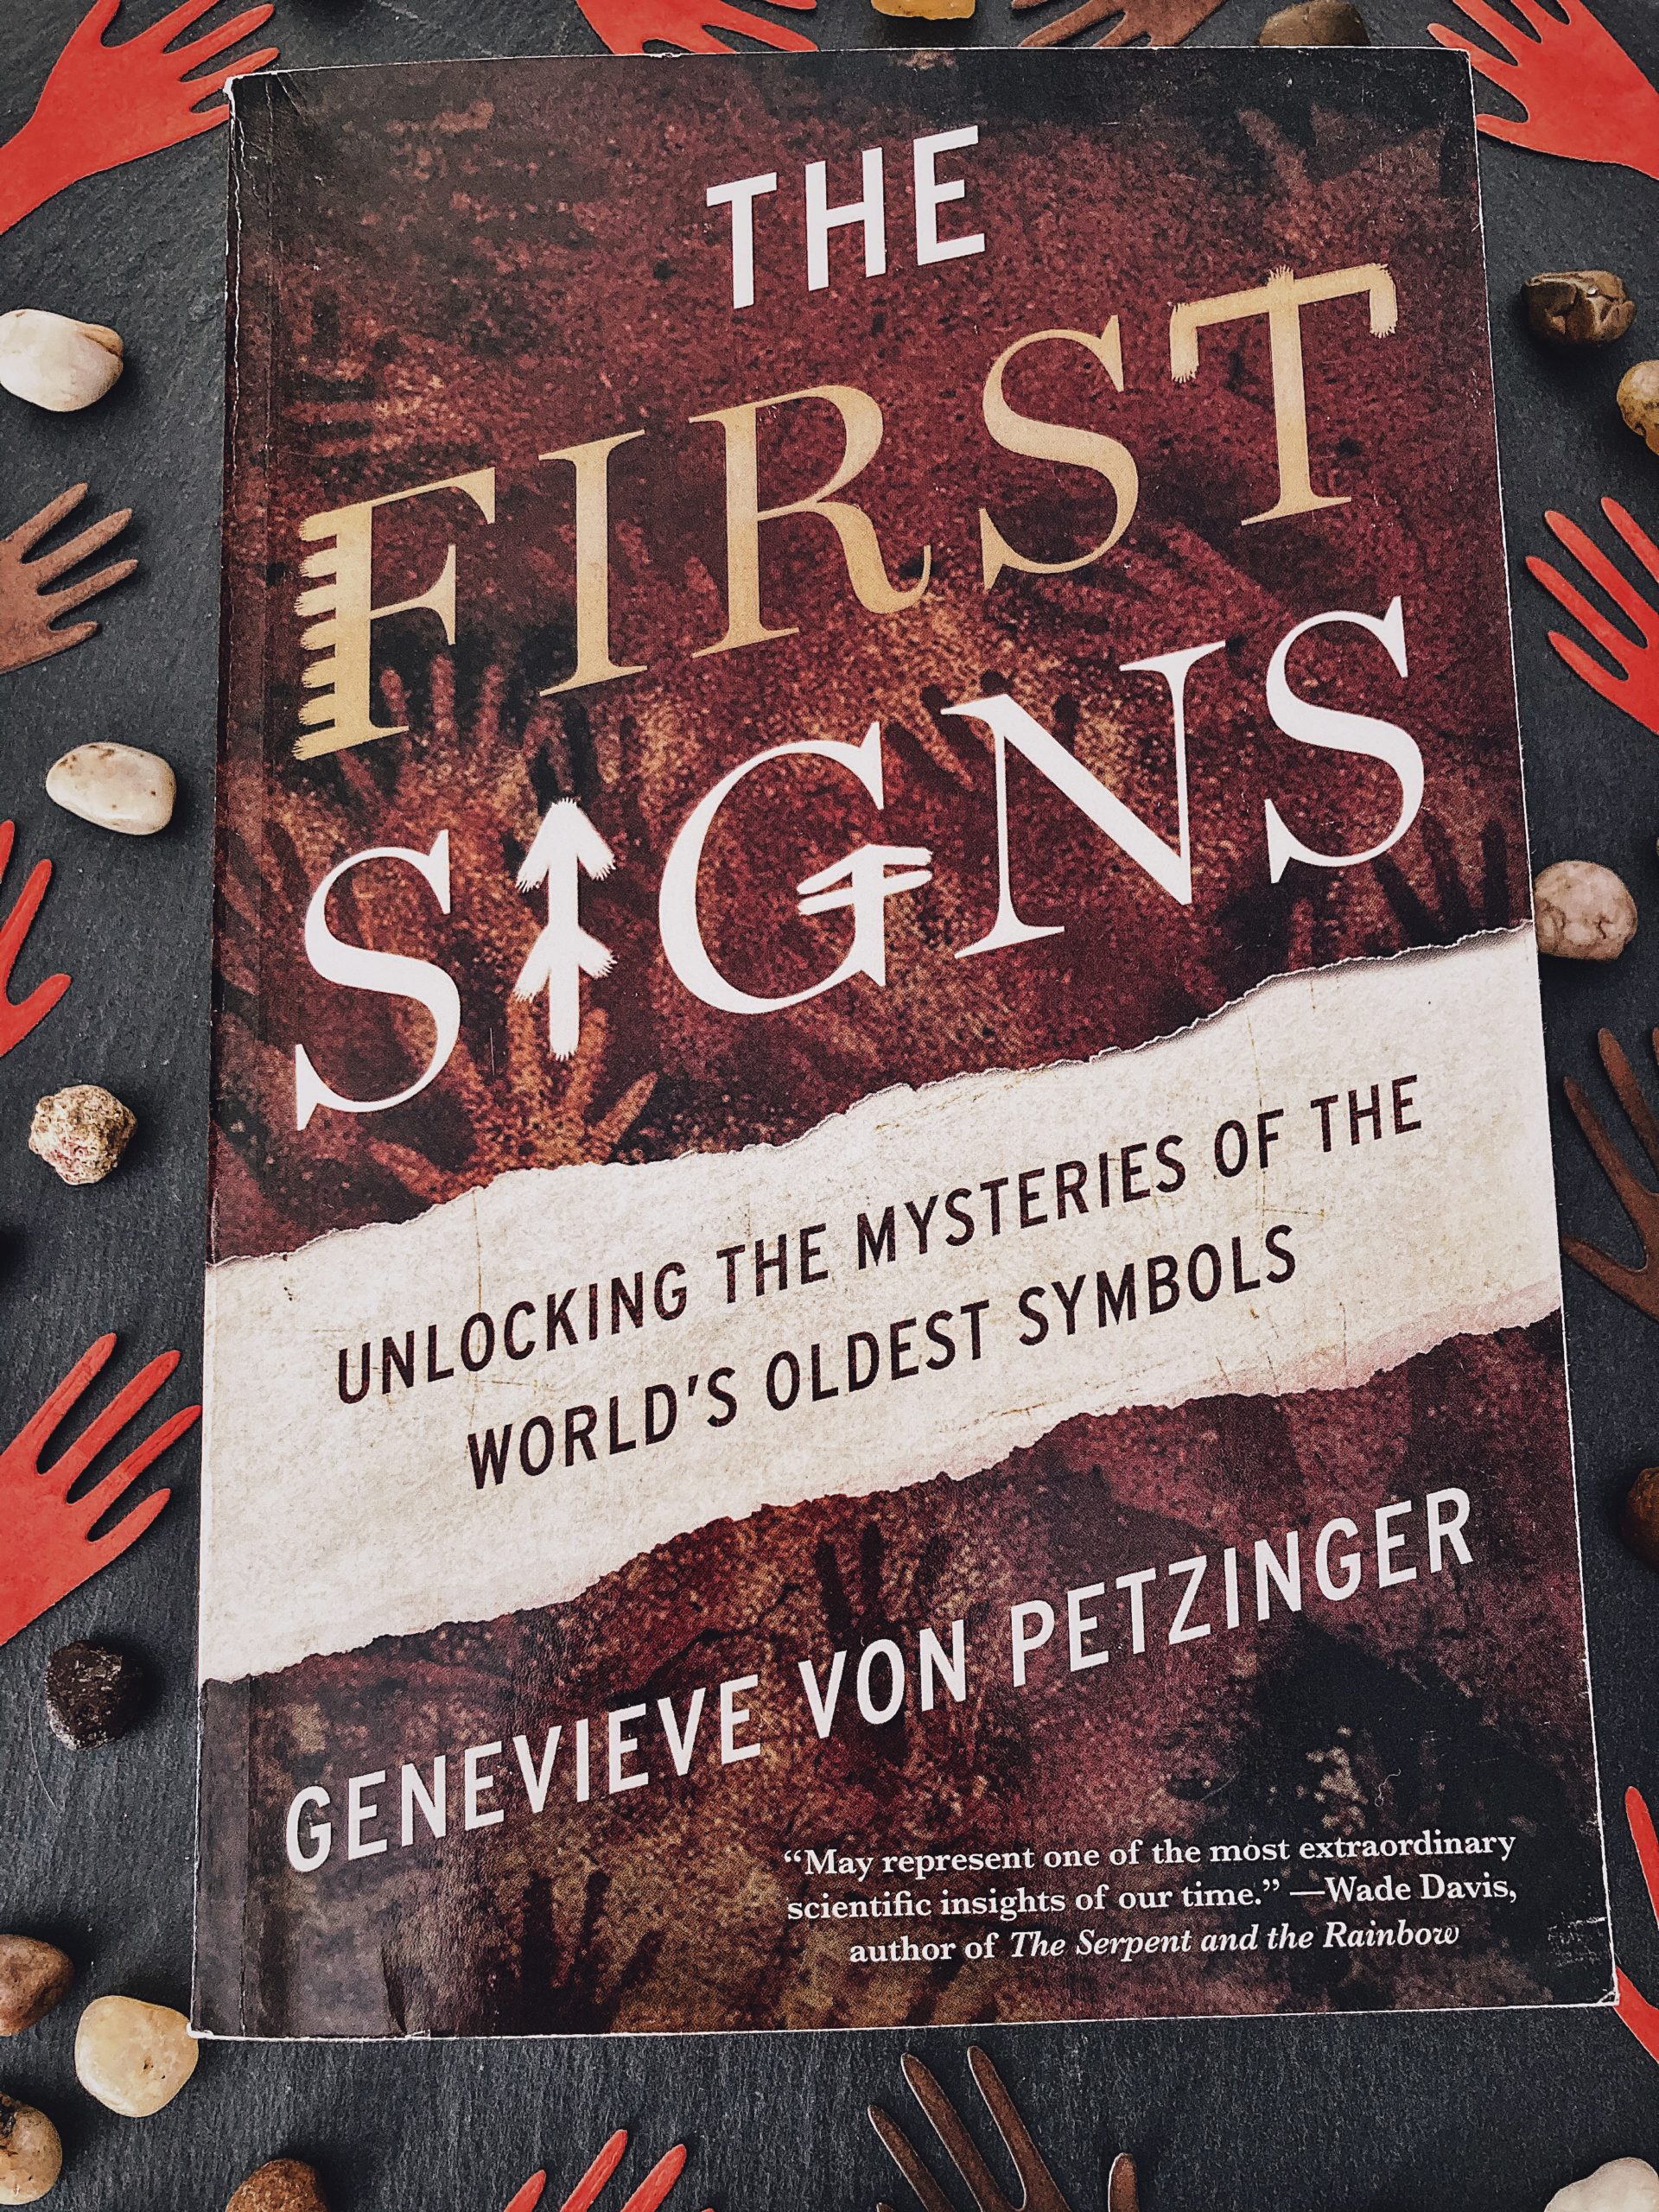 The First Signs by Genevieve von Petzinger